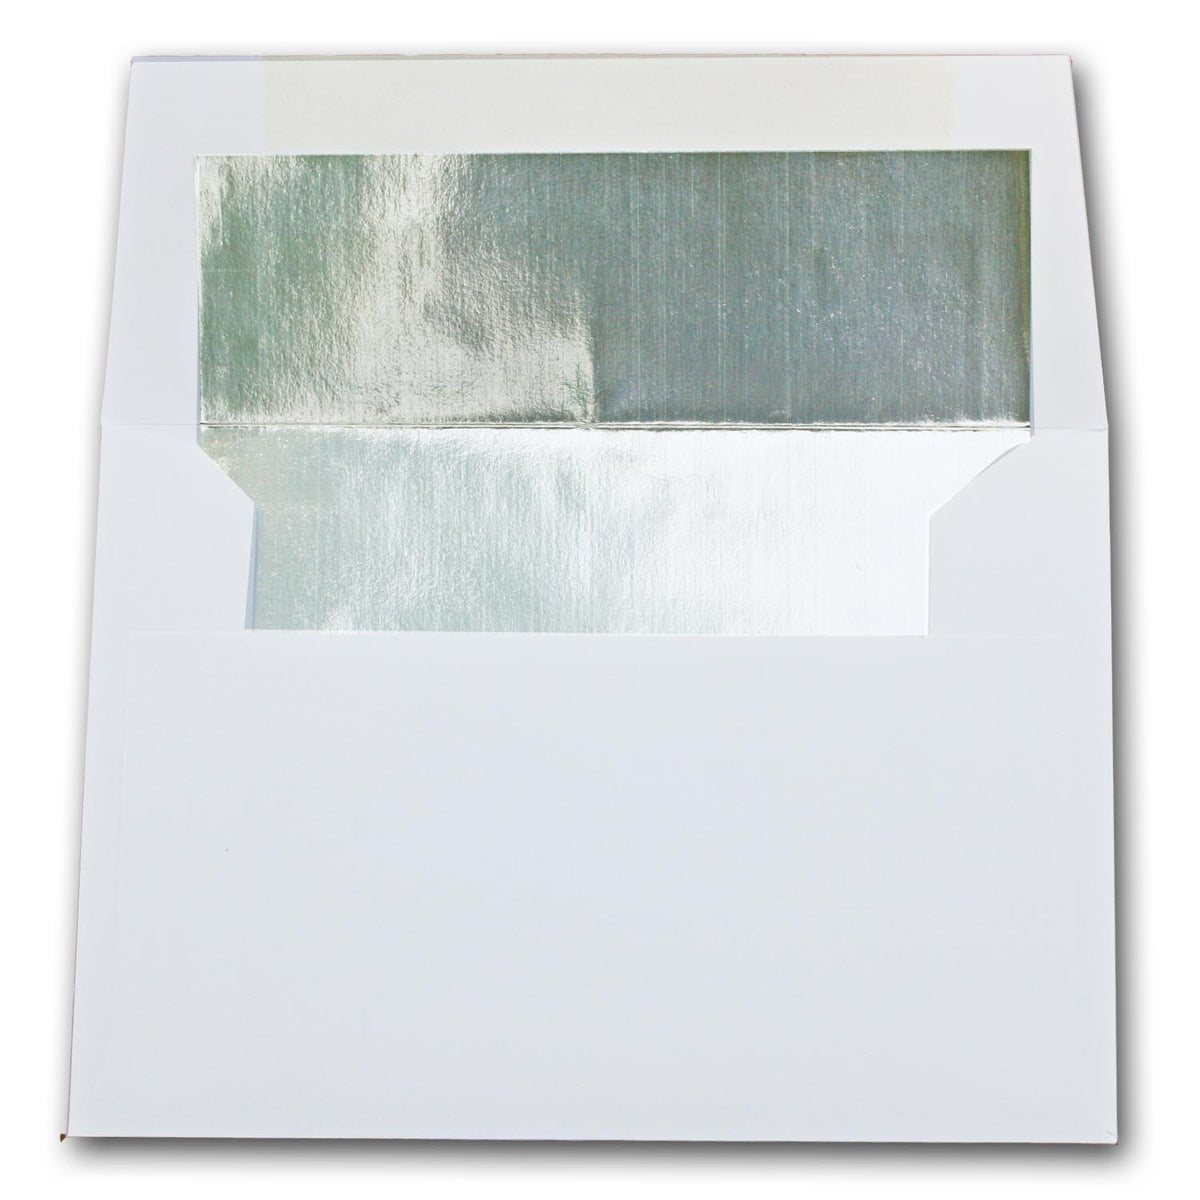 White-SILVER Foil lined Envelopes